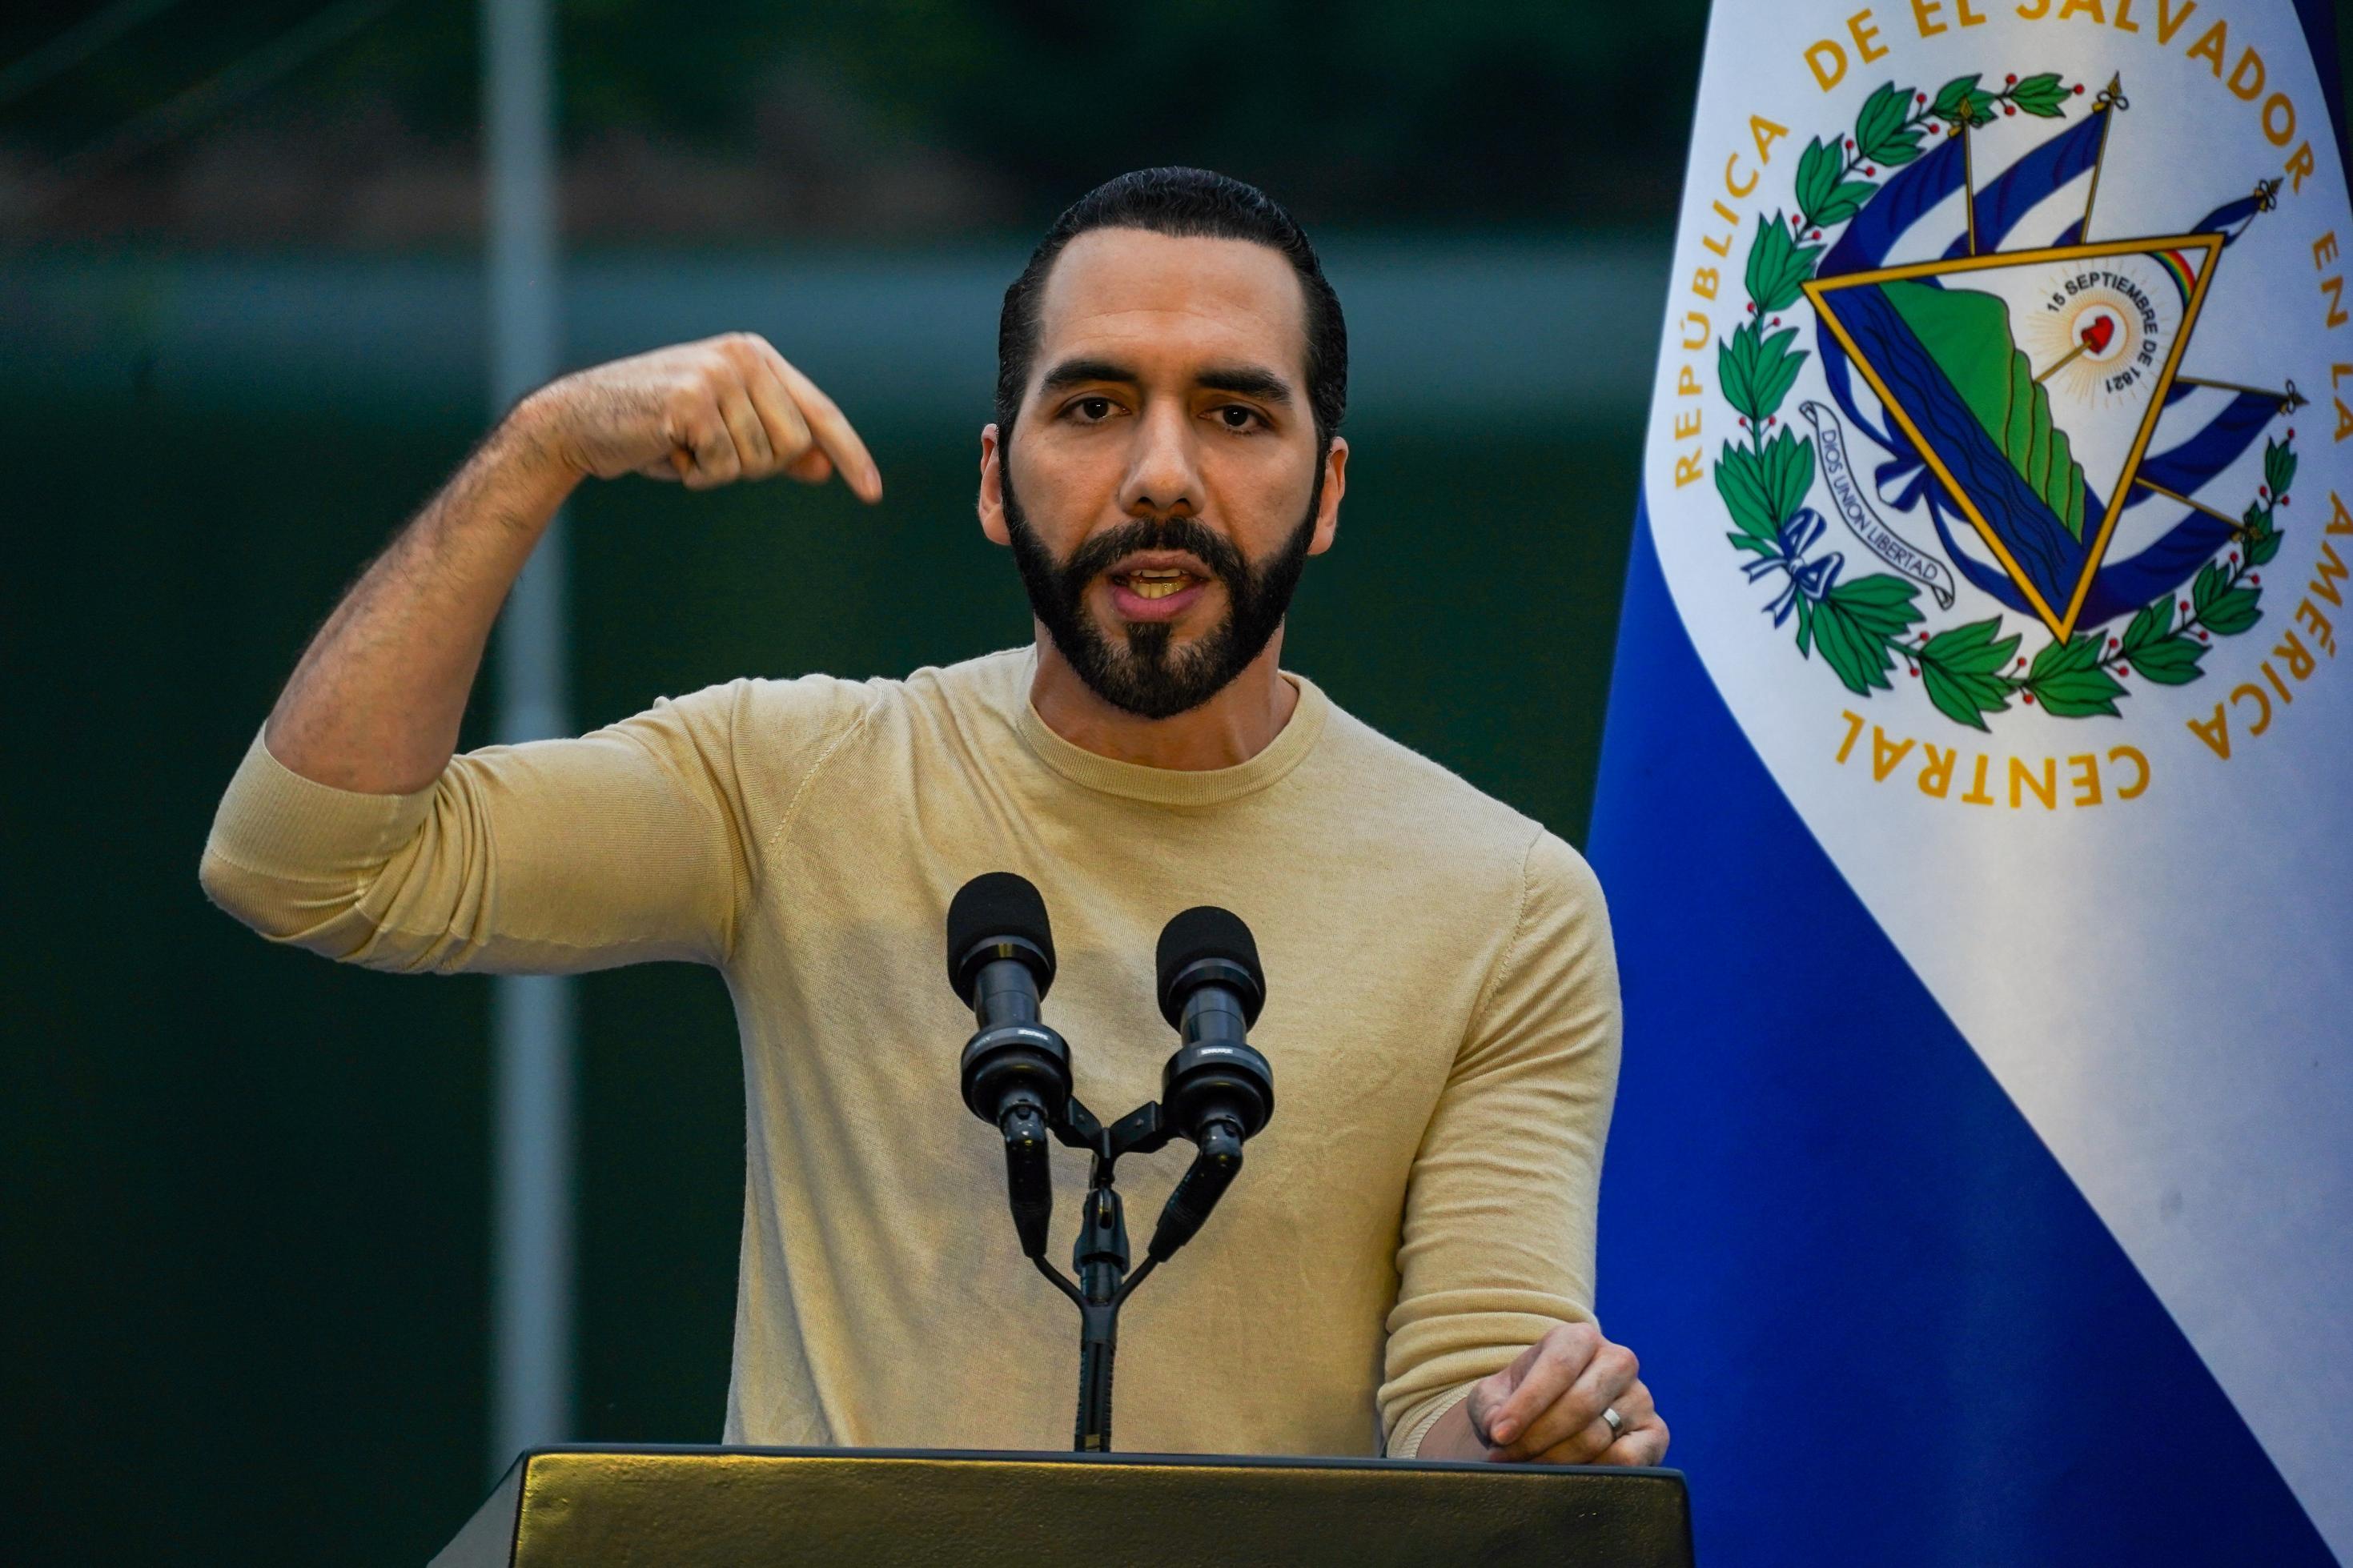 El Salvadors Präsident Bukele im beigen, hautengen Pulli, gestikuliert an einem Rednerpult, dahinter die Landesflagge.